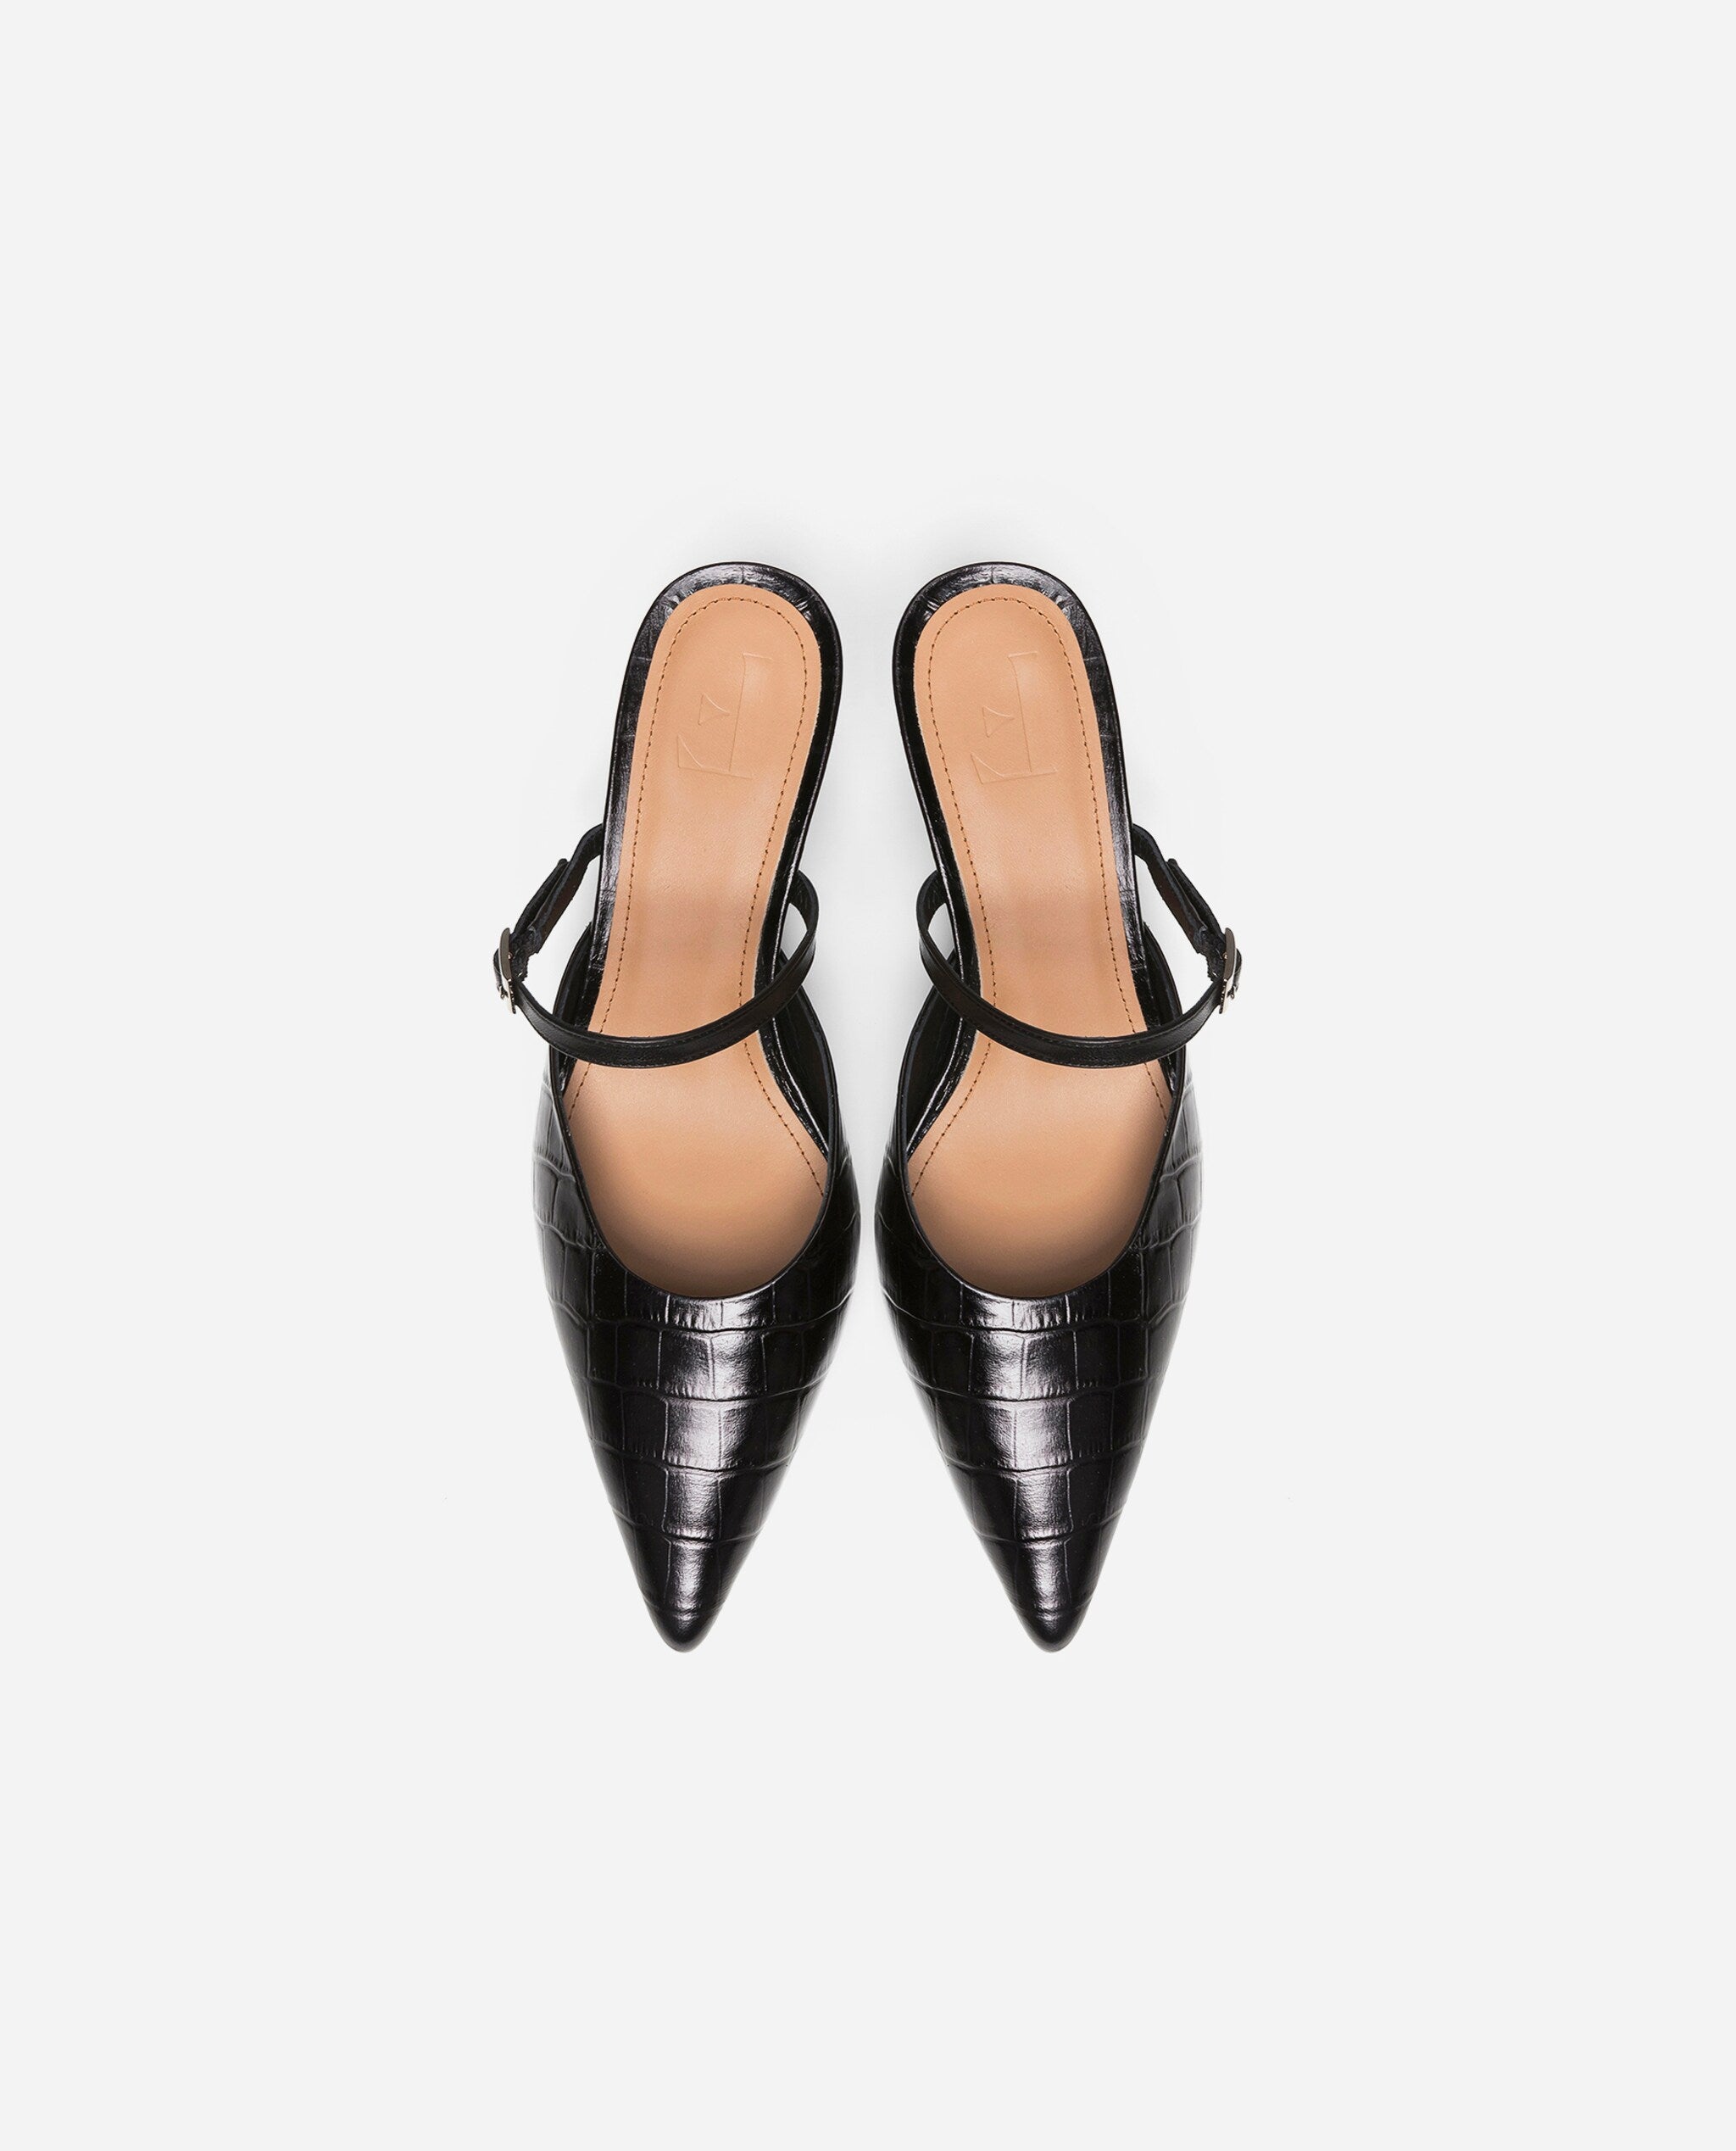 Hilda Croco Leather Black Mule Shoes Heels 20010411817-001 - 4